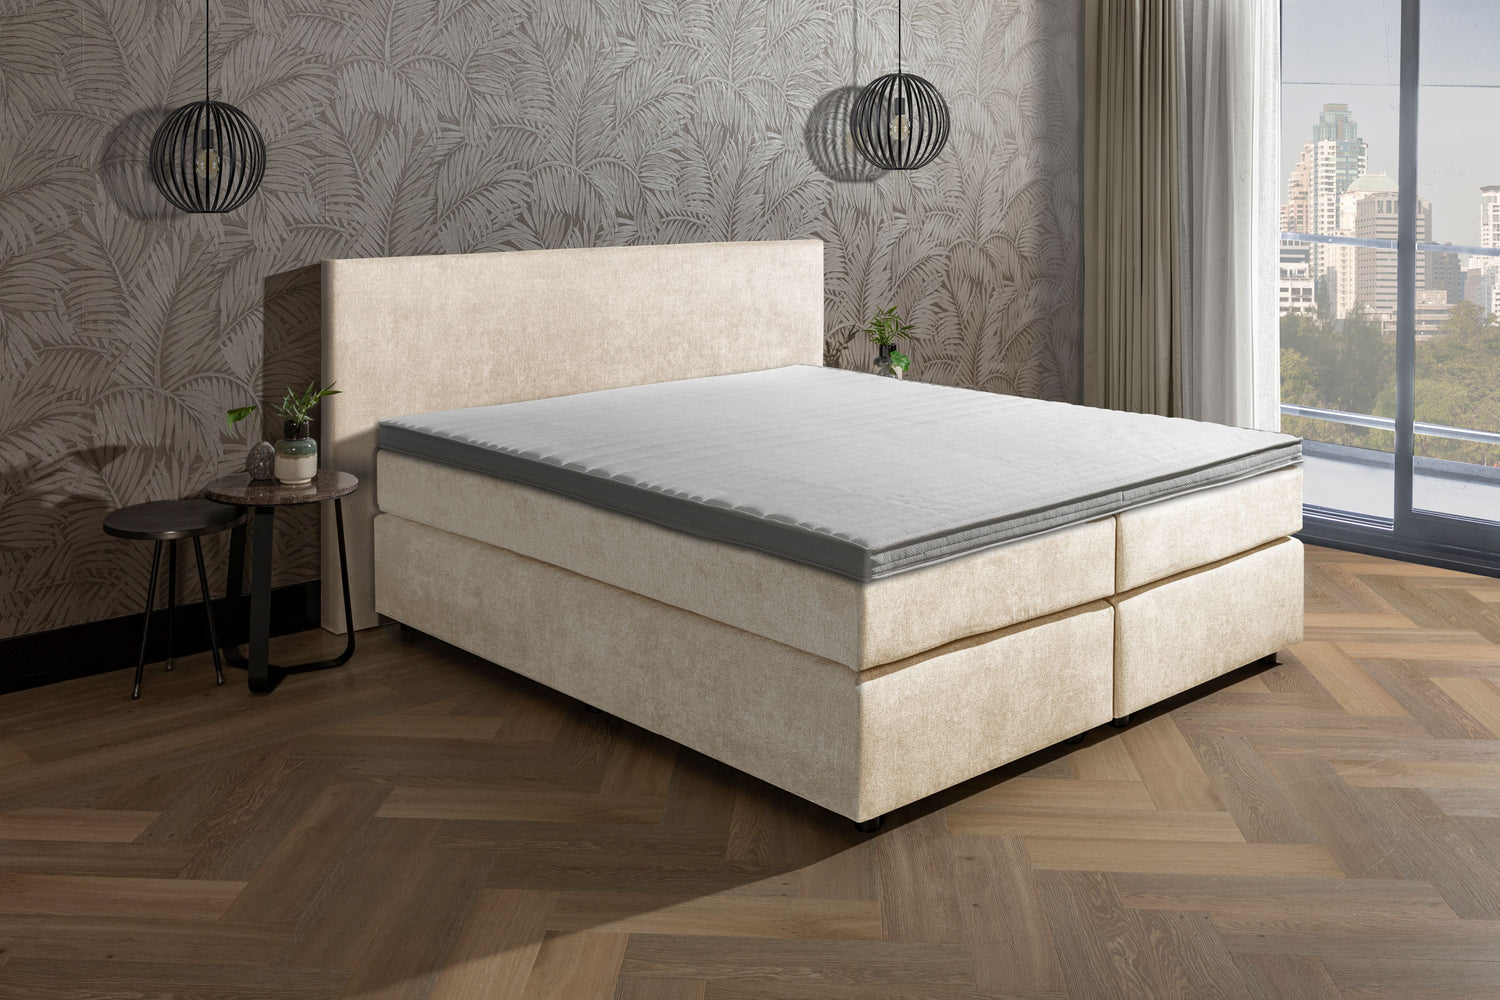 Beven Kleren Romanschrijver Van der Valk luxury bed + gestoffeerd matras + topper + achterwand